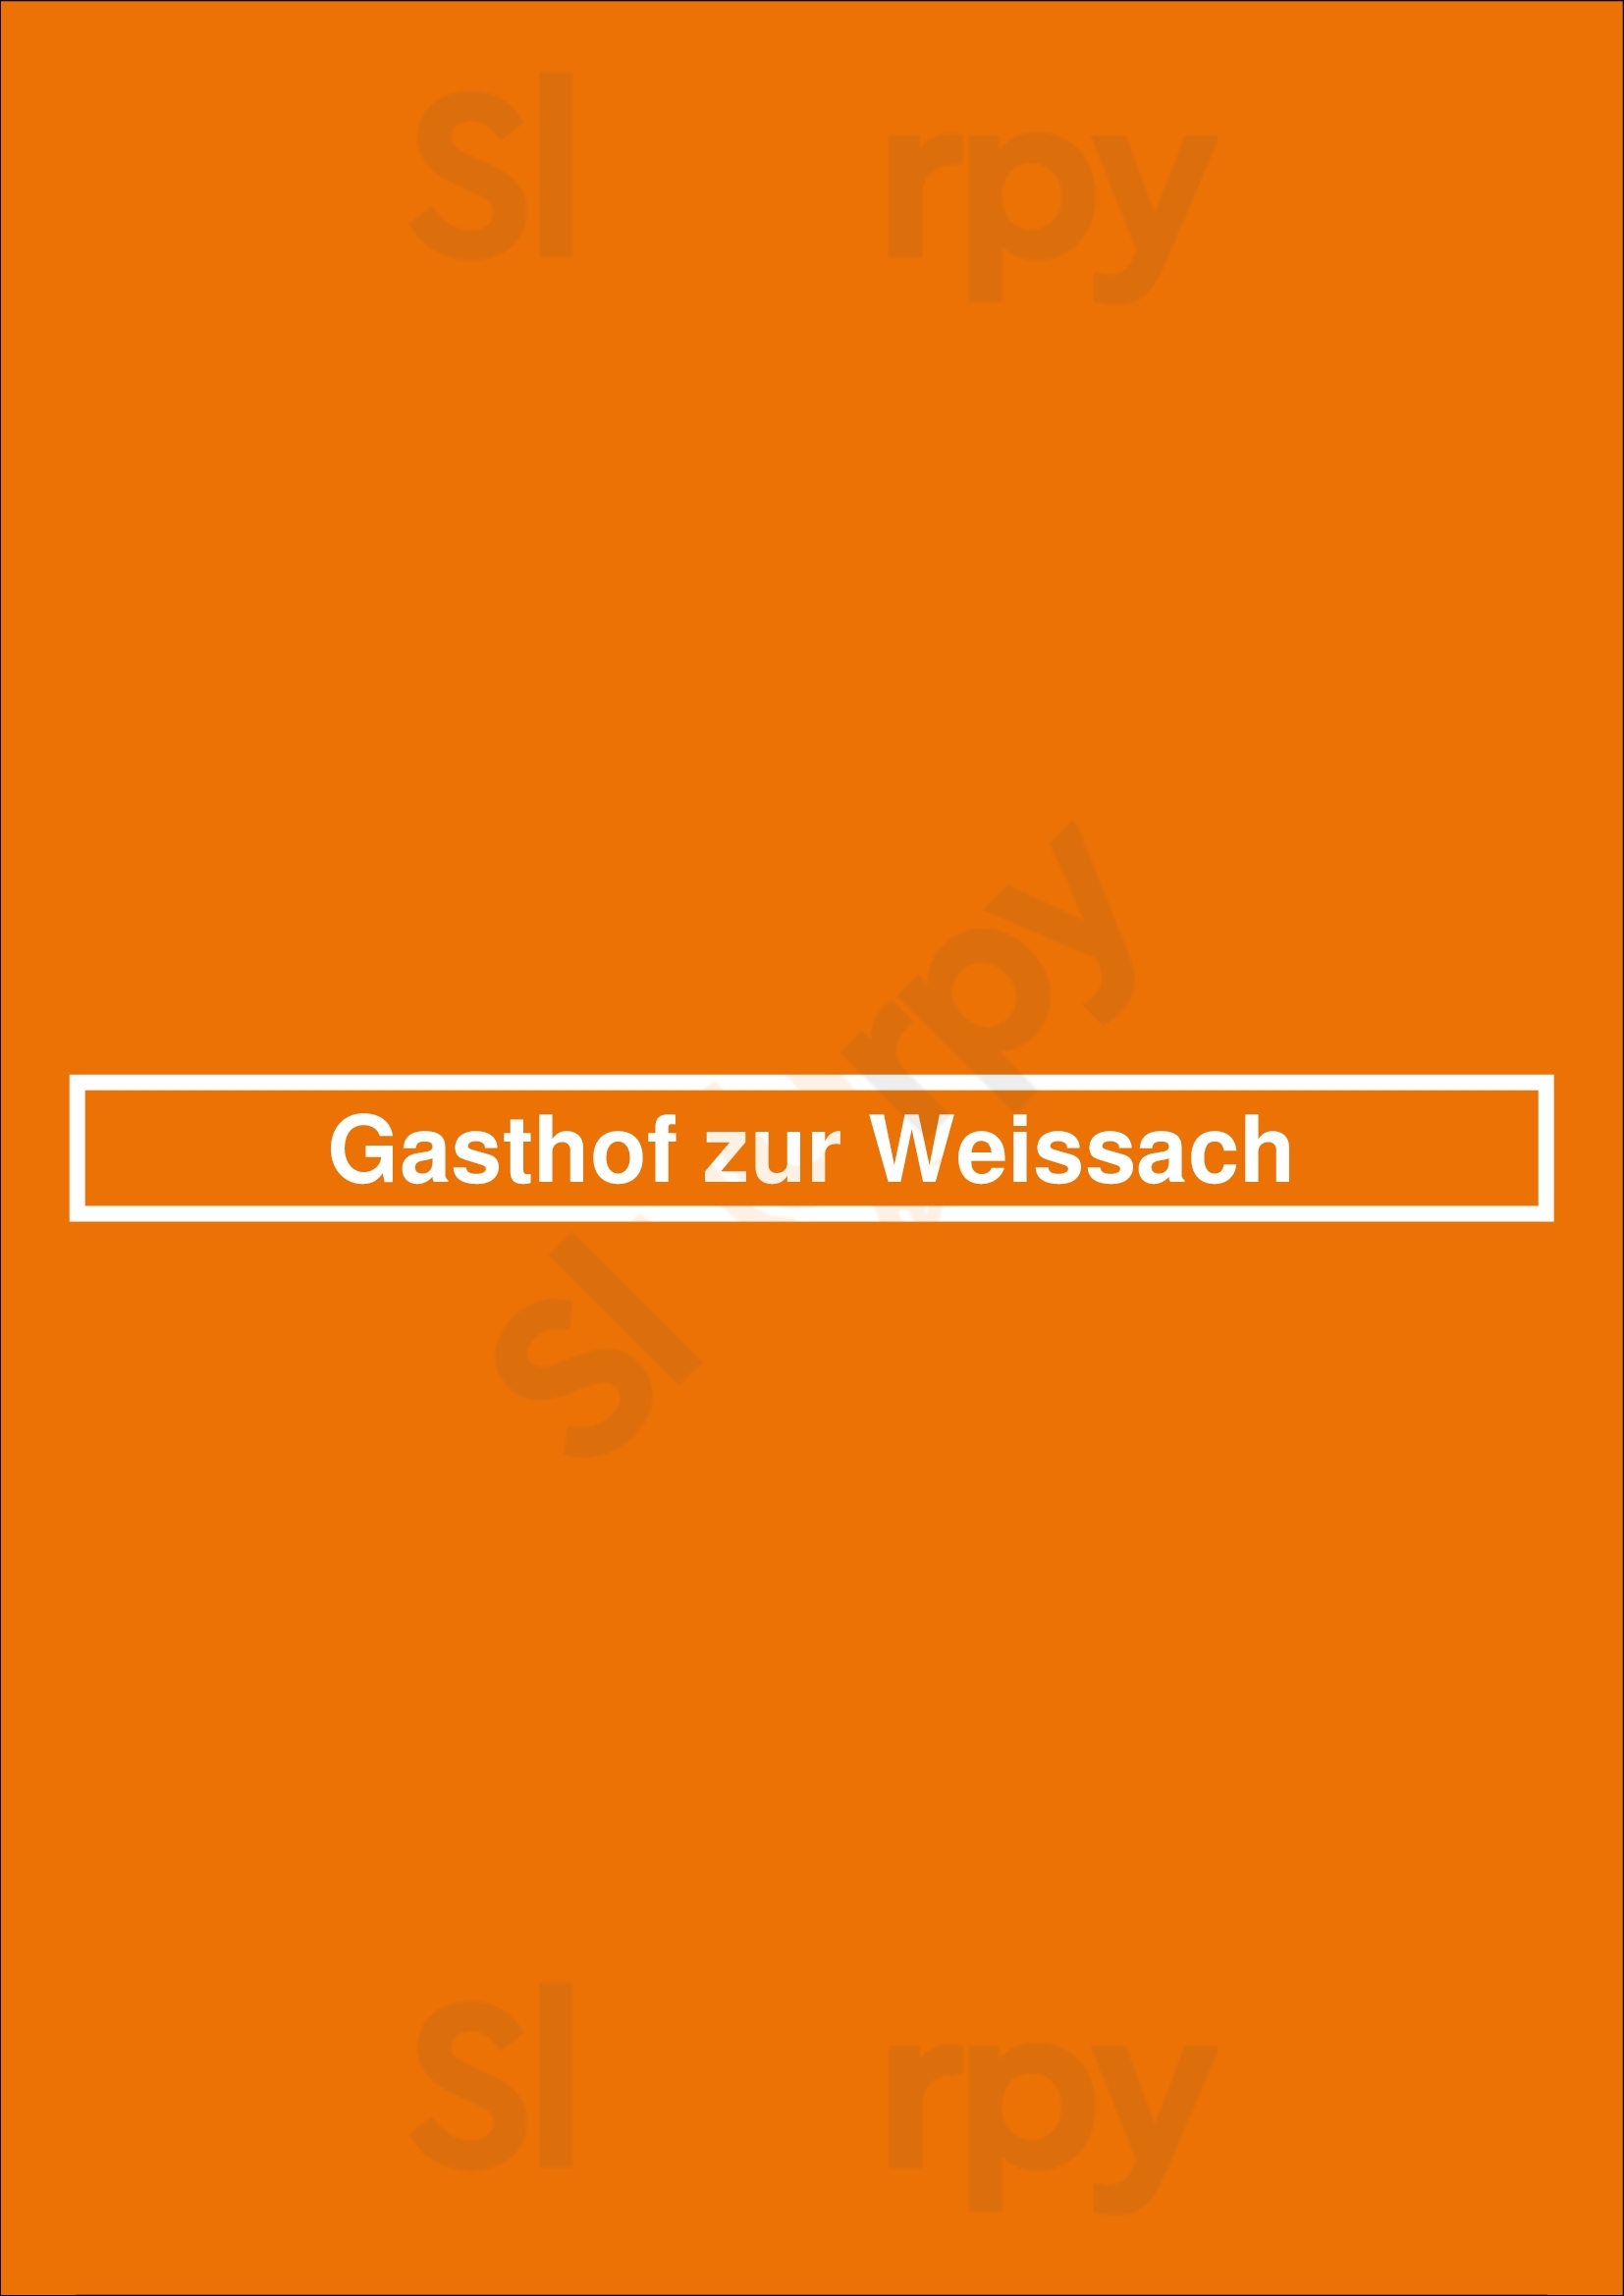 Gasthof Zur Weissach Kreuth Menu - 1